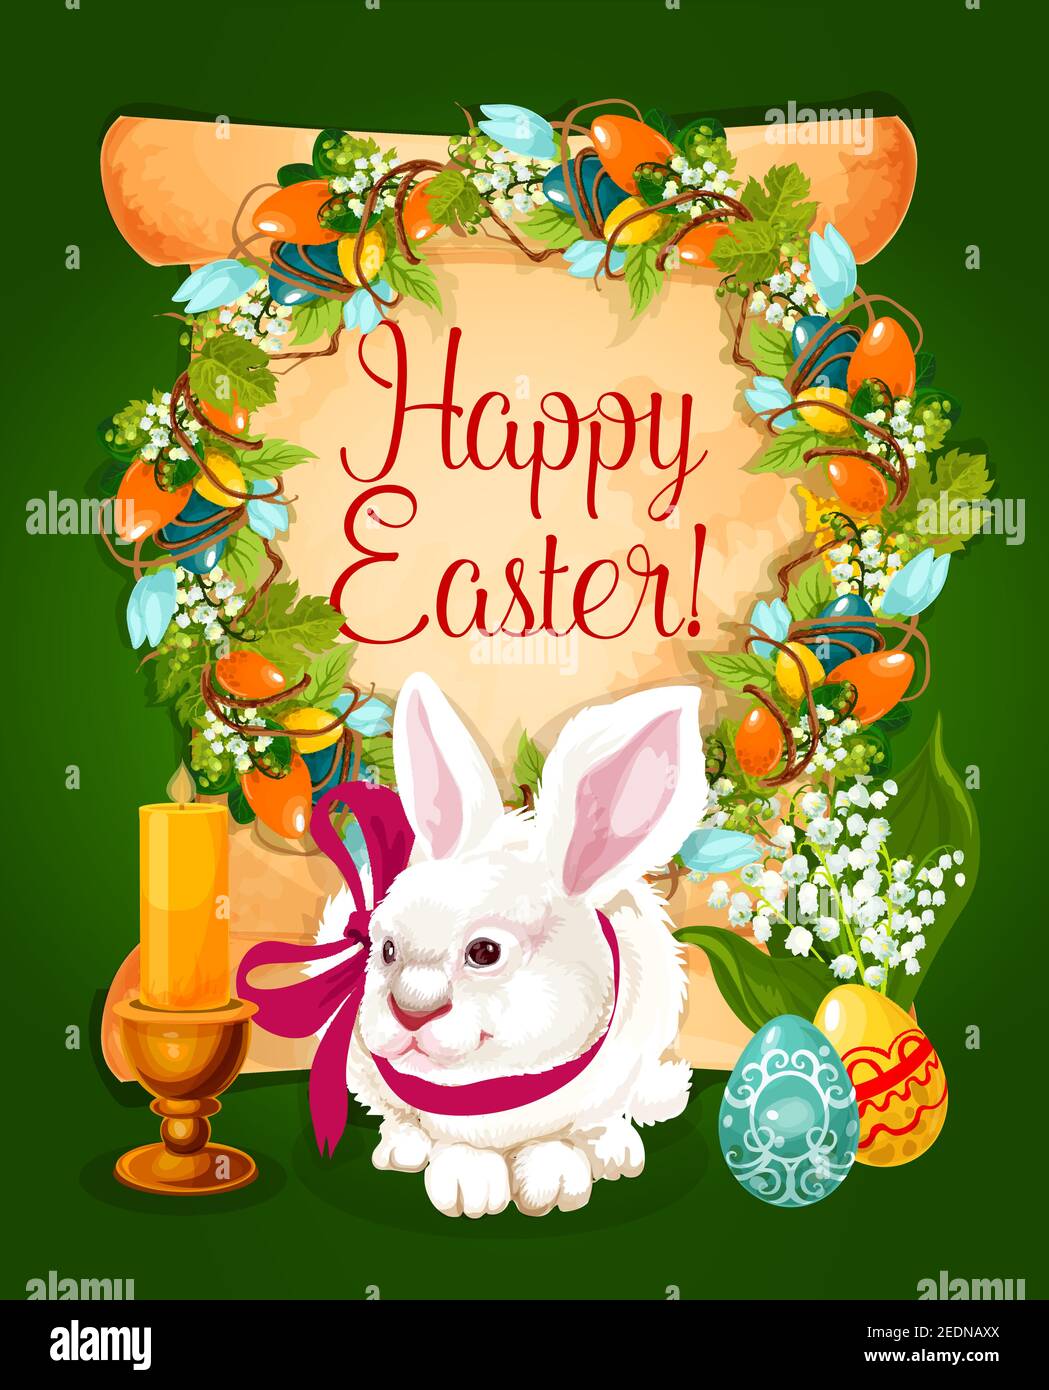 Ostereier mit Kaninchen Grußkarte. Papierrolle mit Ostereiern, Frühlingsblumen und Weintraubenkranz, bemalte Eier, weißer Hase mit Band, Hase Stock Vektor